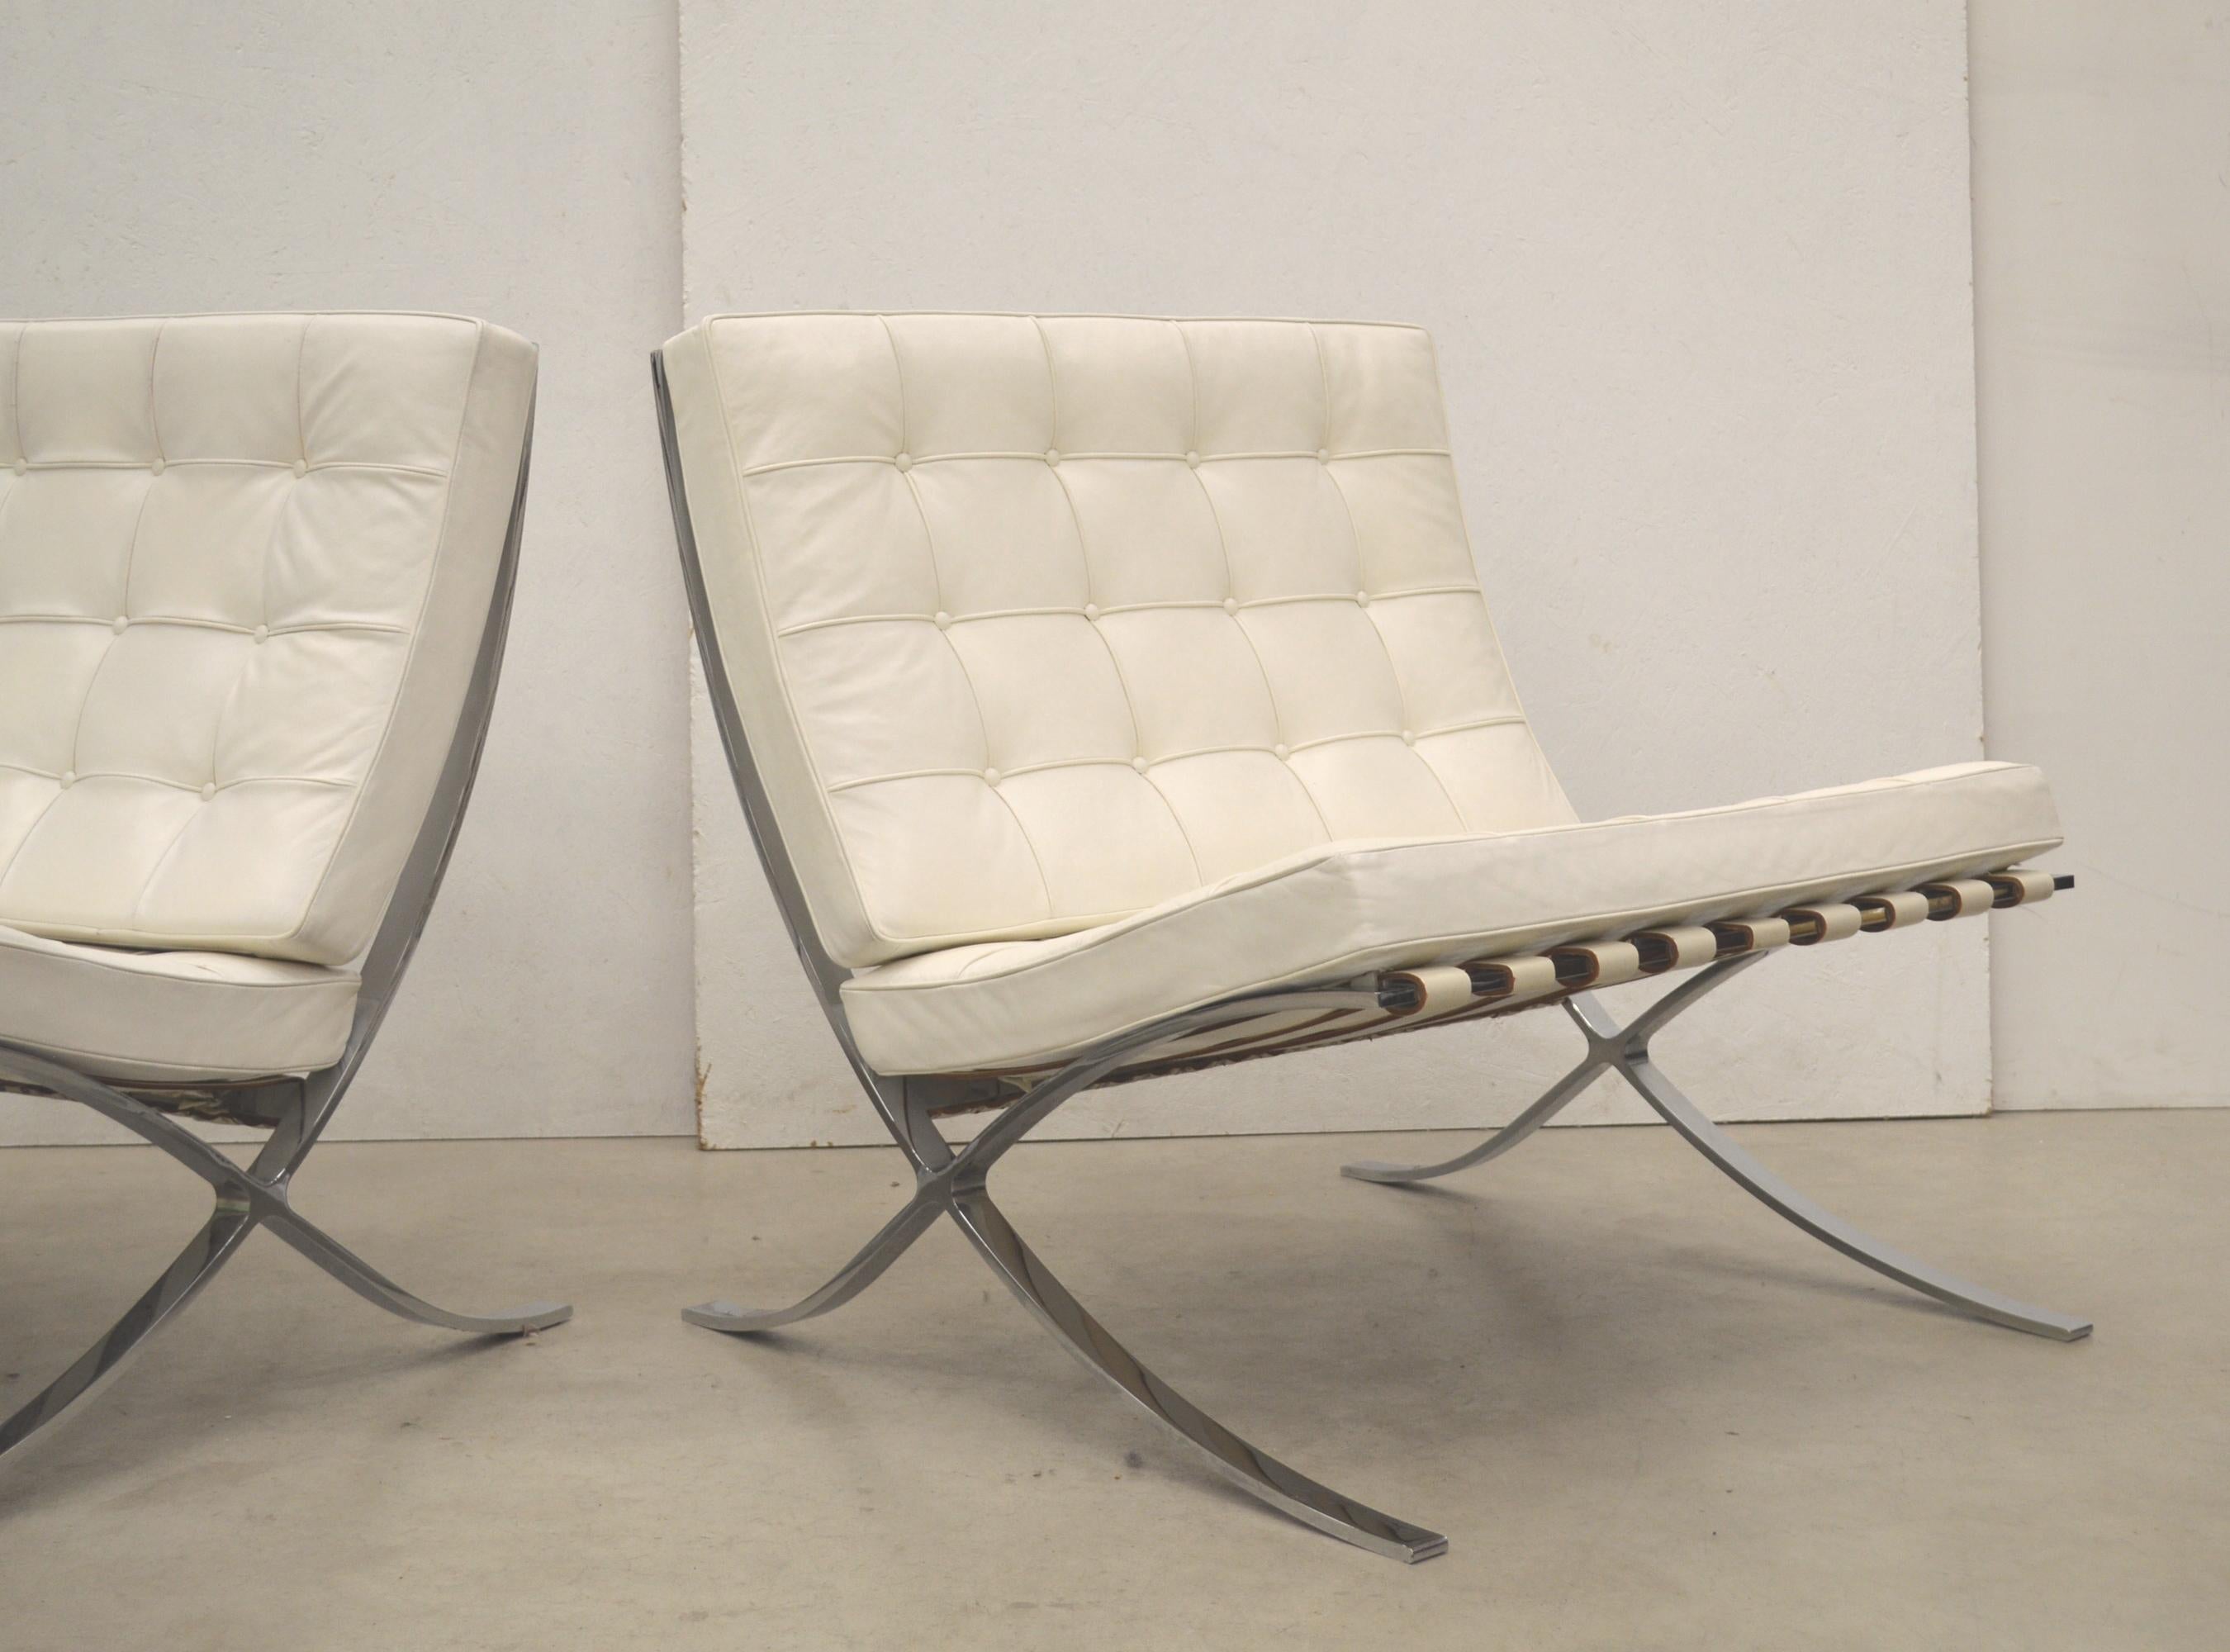 Ces très rares chaises Barcelone ont été conçues par Mies van der Rohe en 1929 et produites par Knoll en 1981 pour le 30e anniversaire de Knoll International. 

Dans ce contexte, Knoll a produit en 1981 une édition limitée très rare de seulement